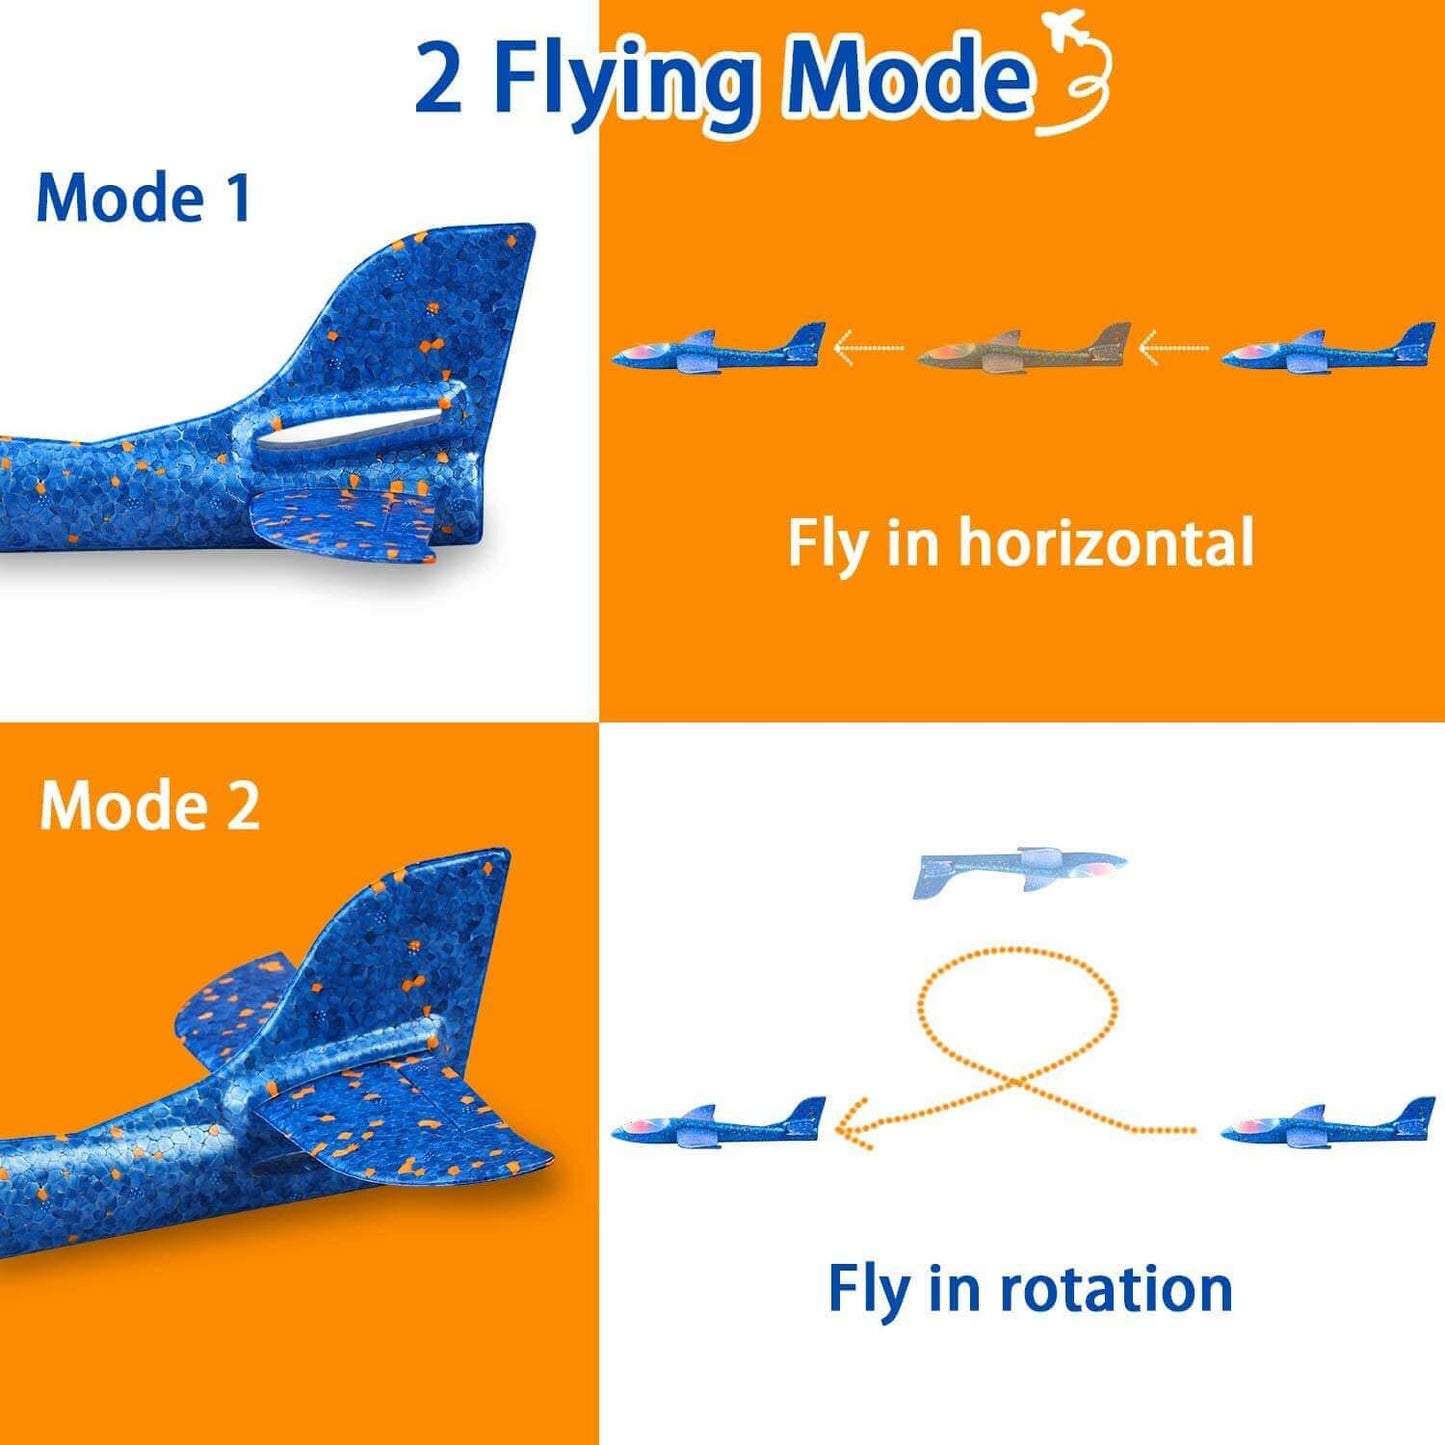 Obtenez le meilleur jouet de planeur volant pour enfants - Grand modèle d'avion en mousse de 50 cm avec lumière LED et lancer à la main pour s'amuser et jouer en plein air